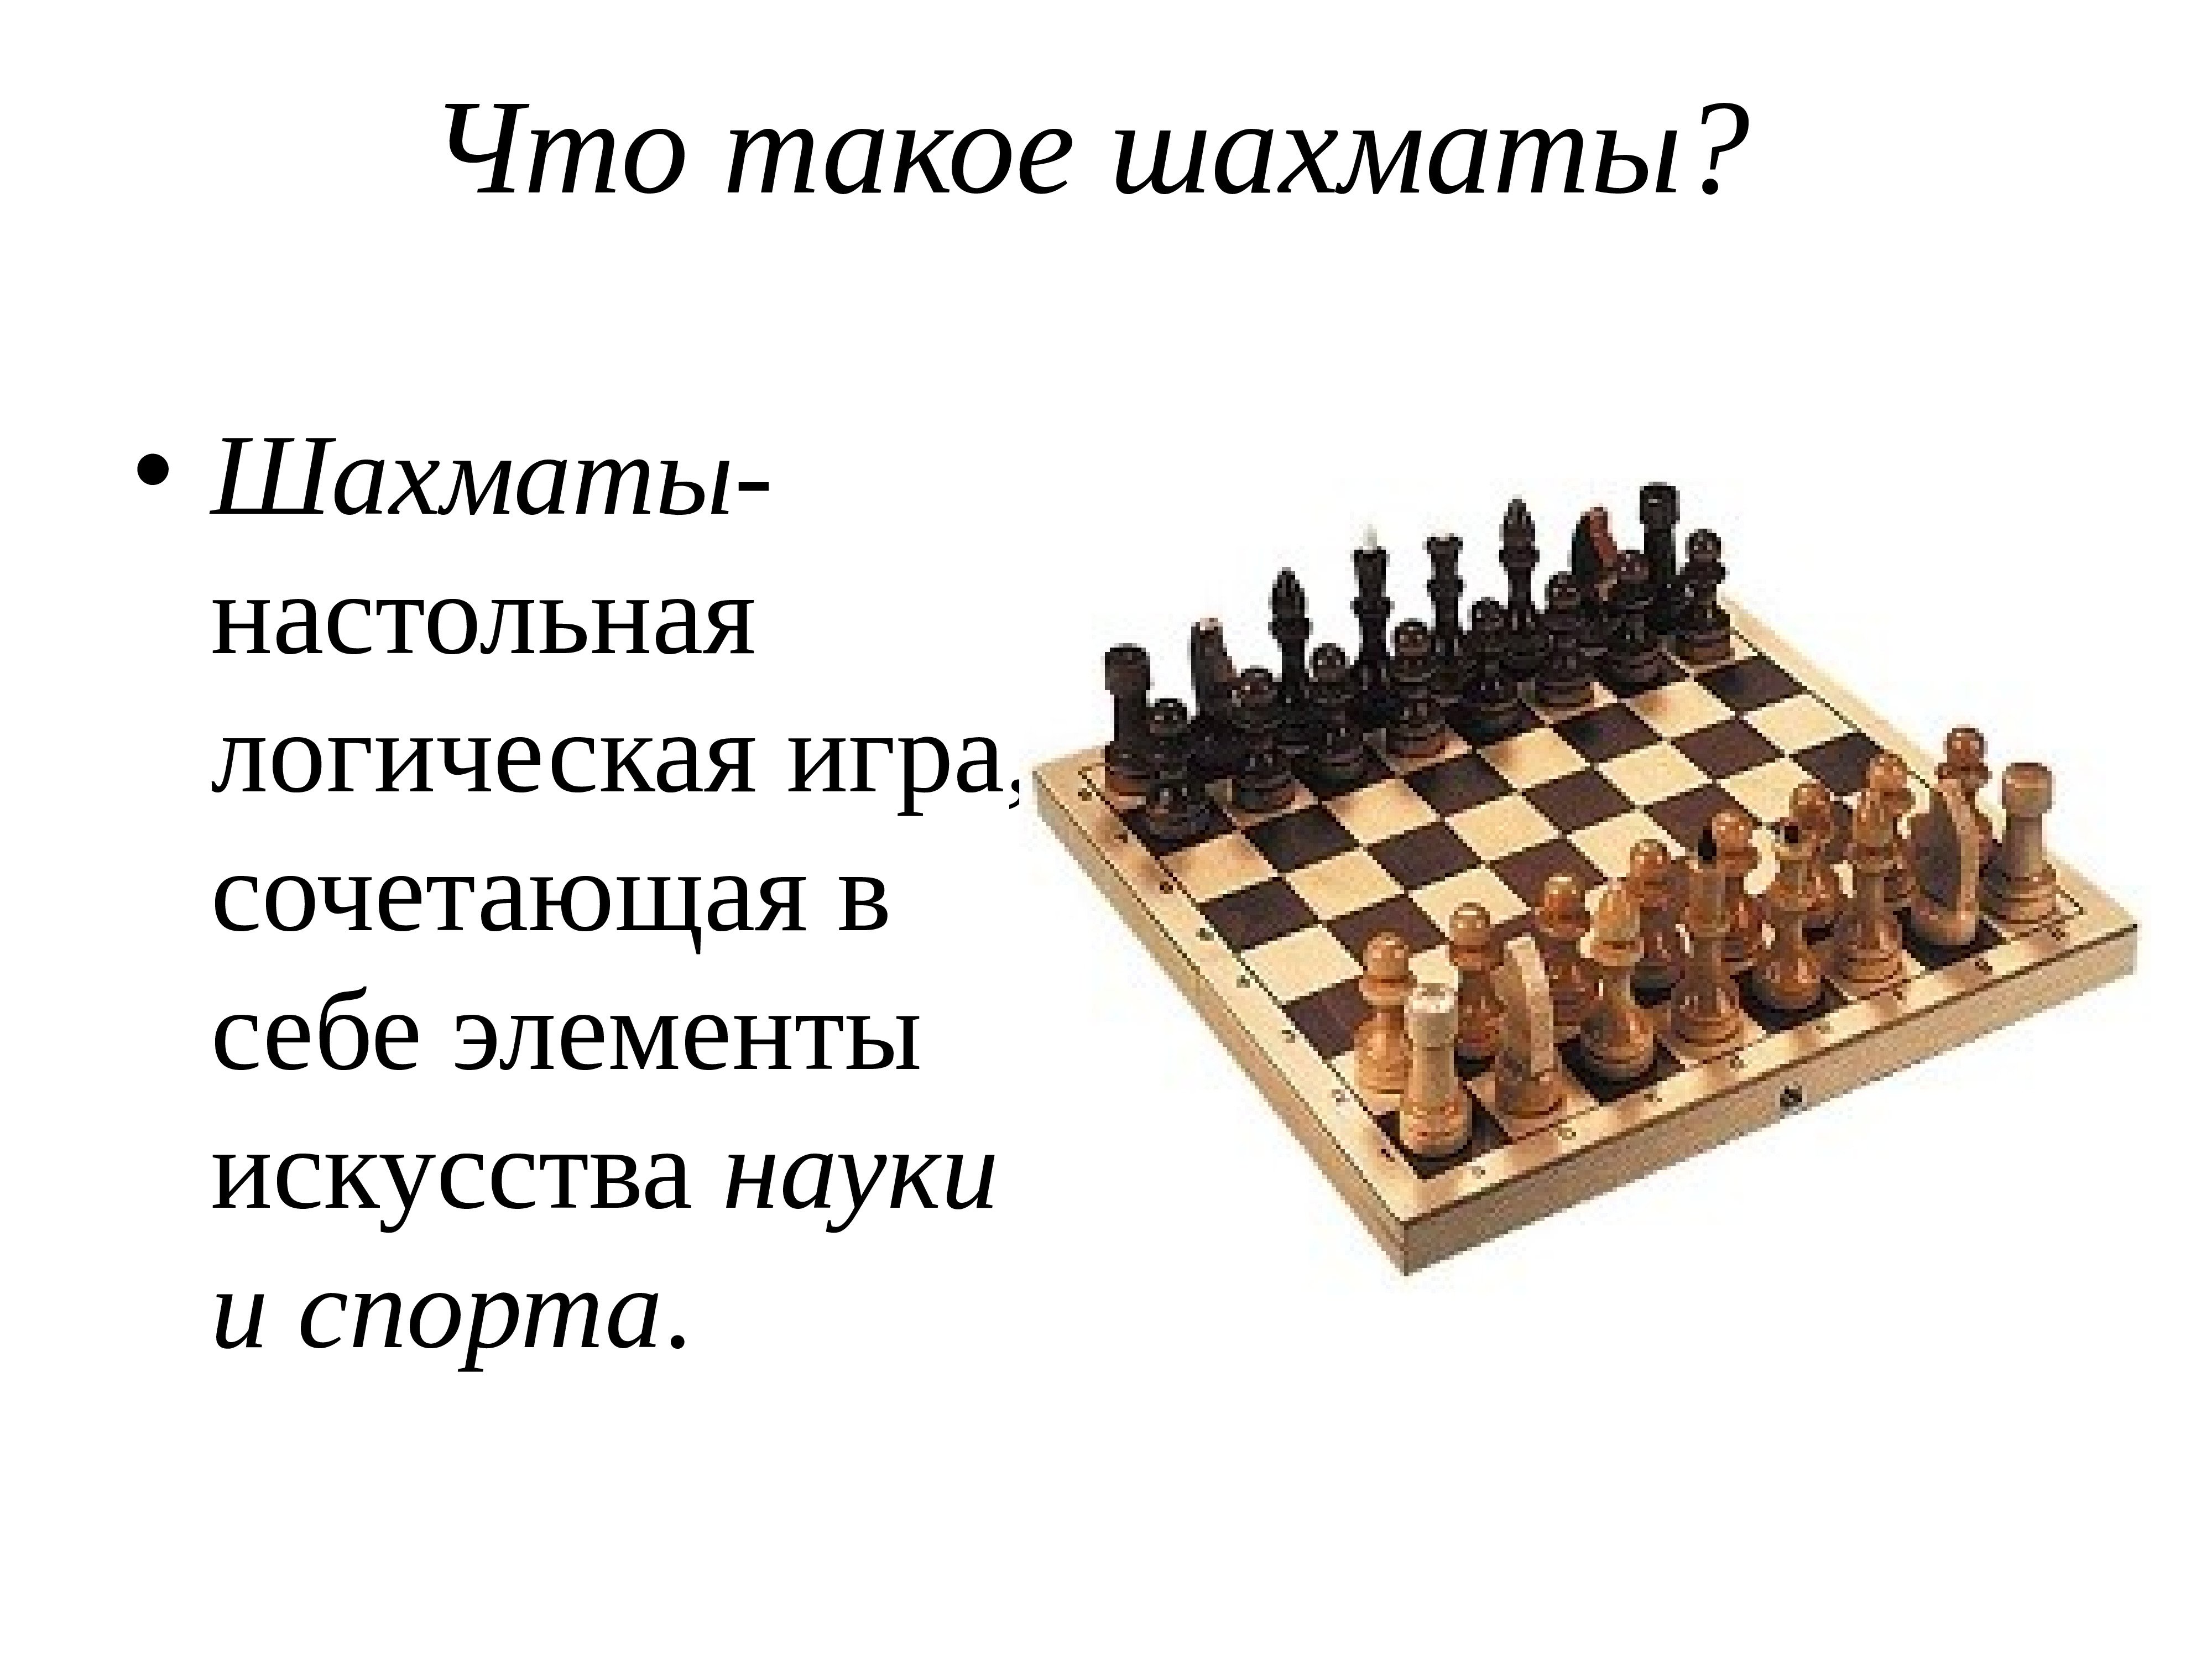 Как известно игра в шахматы была придумана. Шахматы для презентации. Высказывания о шахматах. История шахмат. Презентация на тему шахматы.